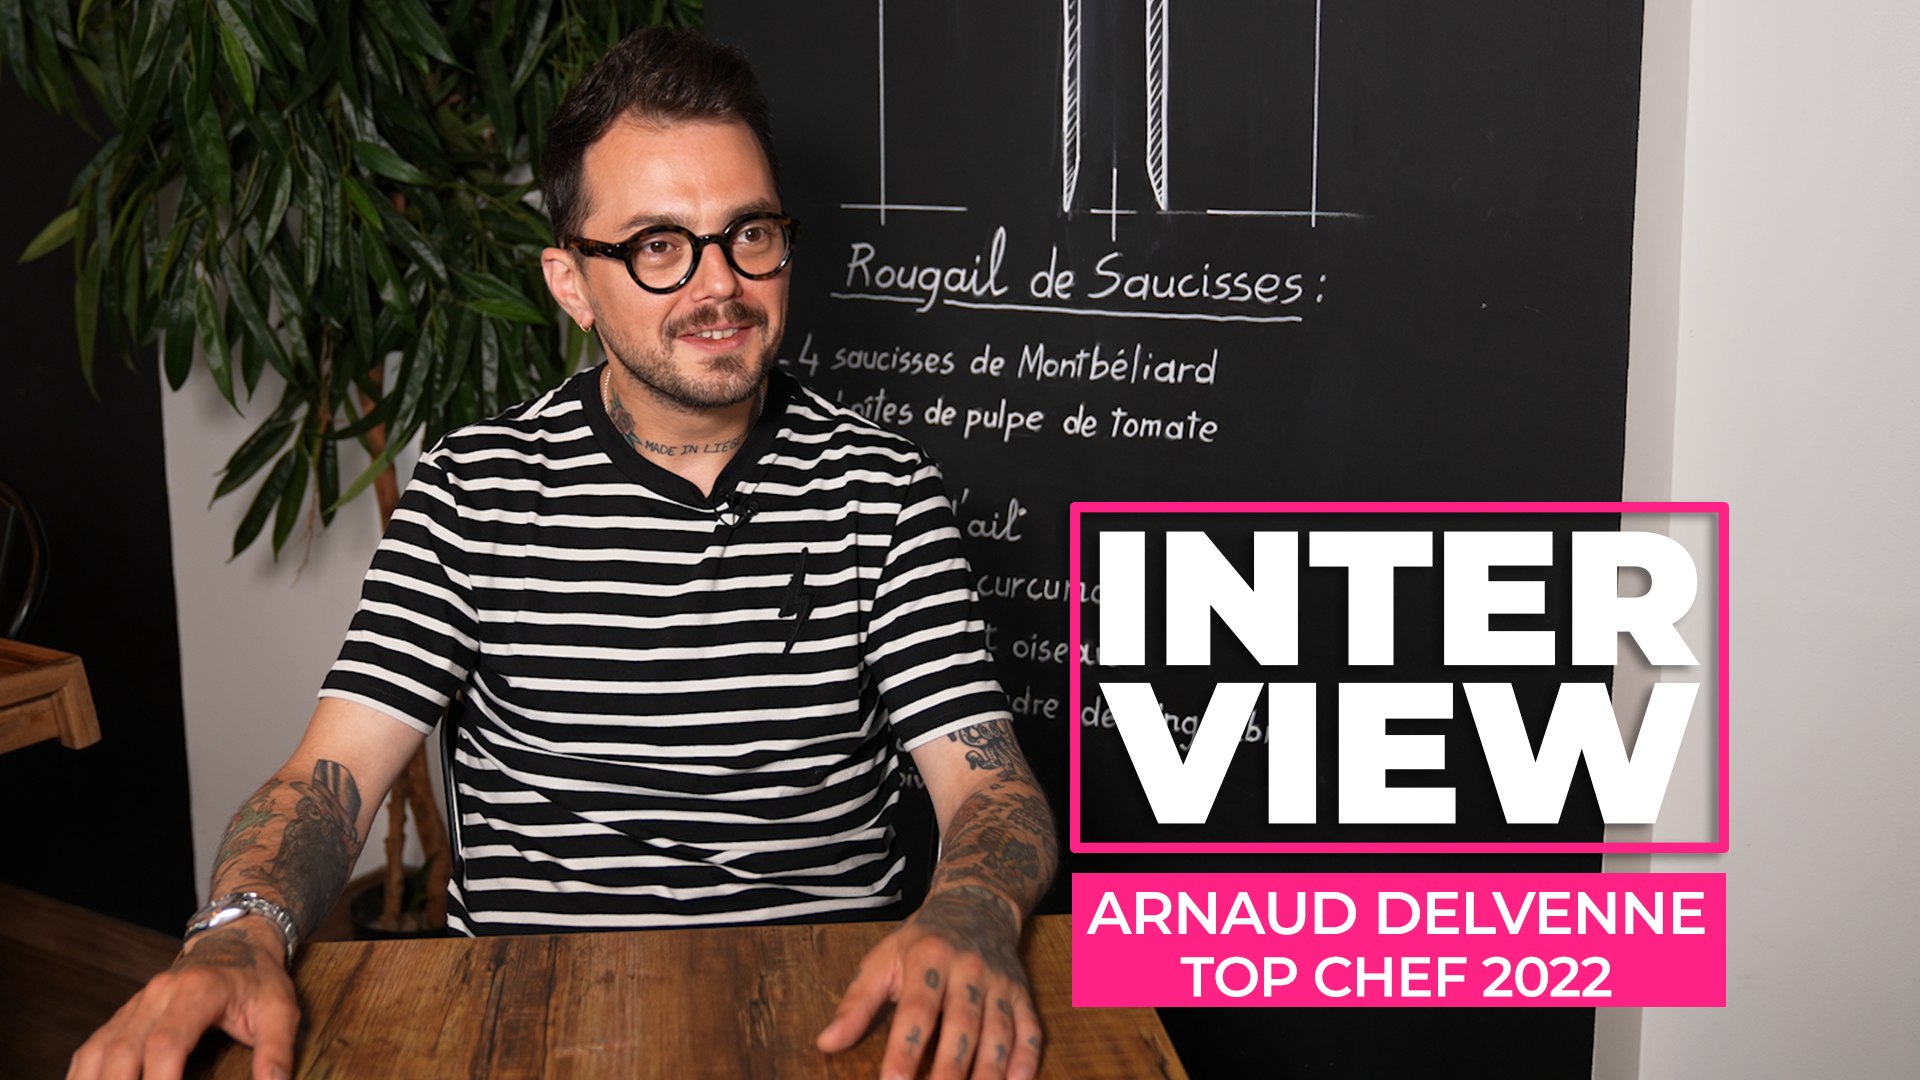 Top Chef 2022 : le finaliste Arnaud Delvenne revient sur son expérience  dans le concours - Vidéo Dailymotion